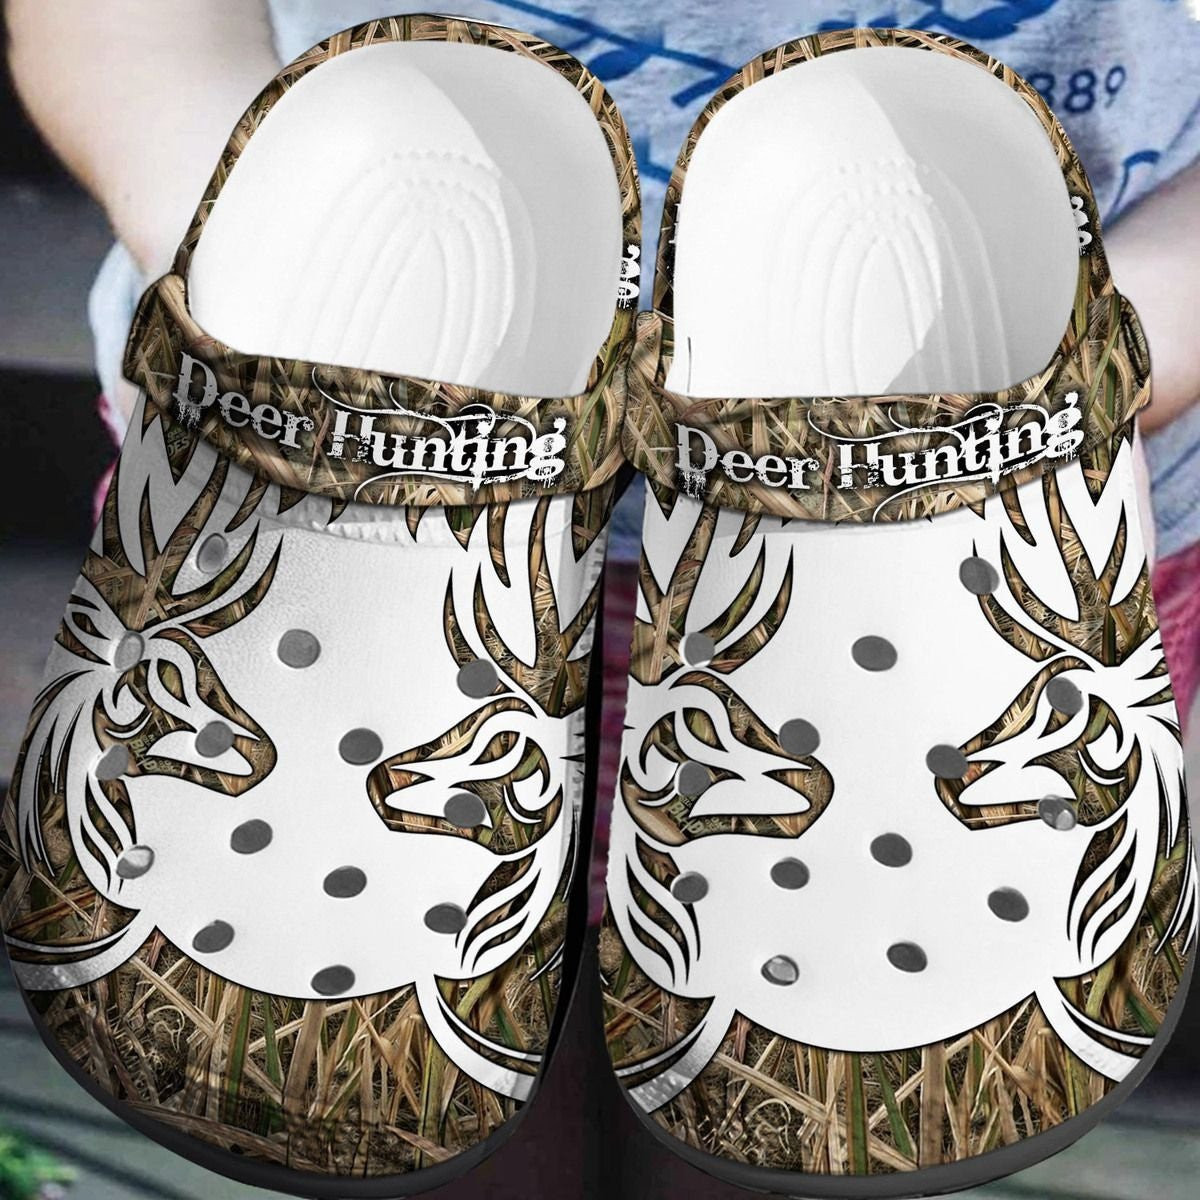 Deer Hunting Crocs Shoes Crocbland Clog Gifts For Men